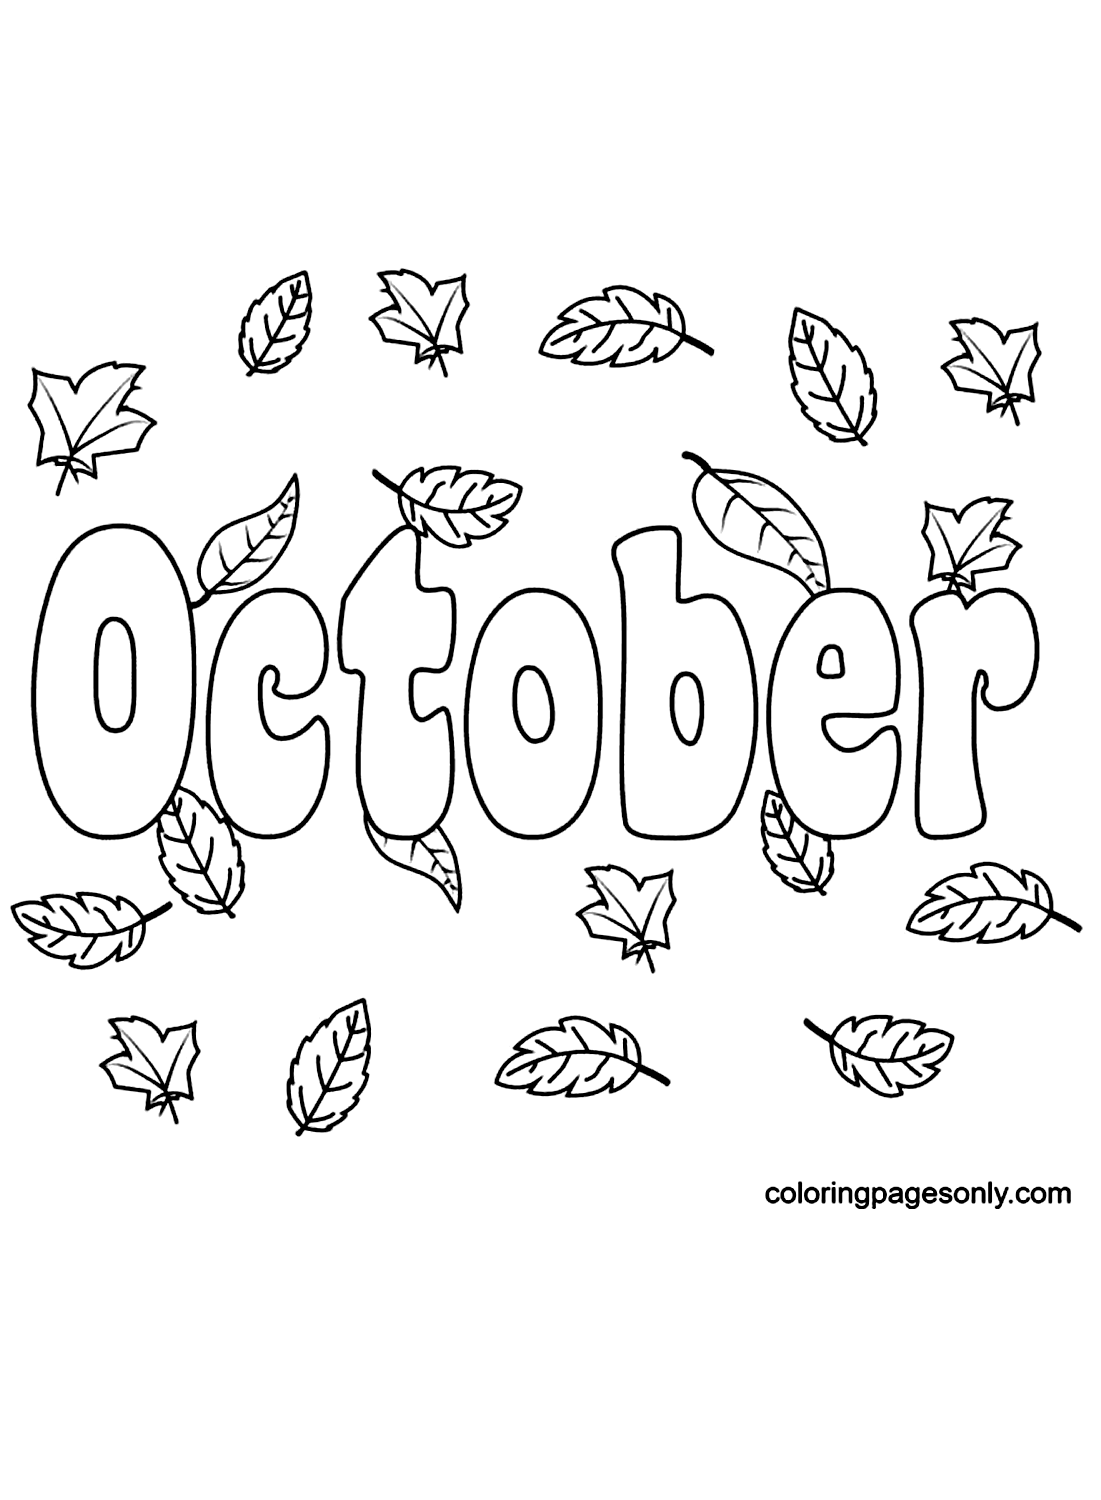 Octobre avec les feuilles d'automne à partir d'octobre